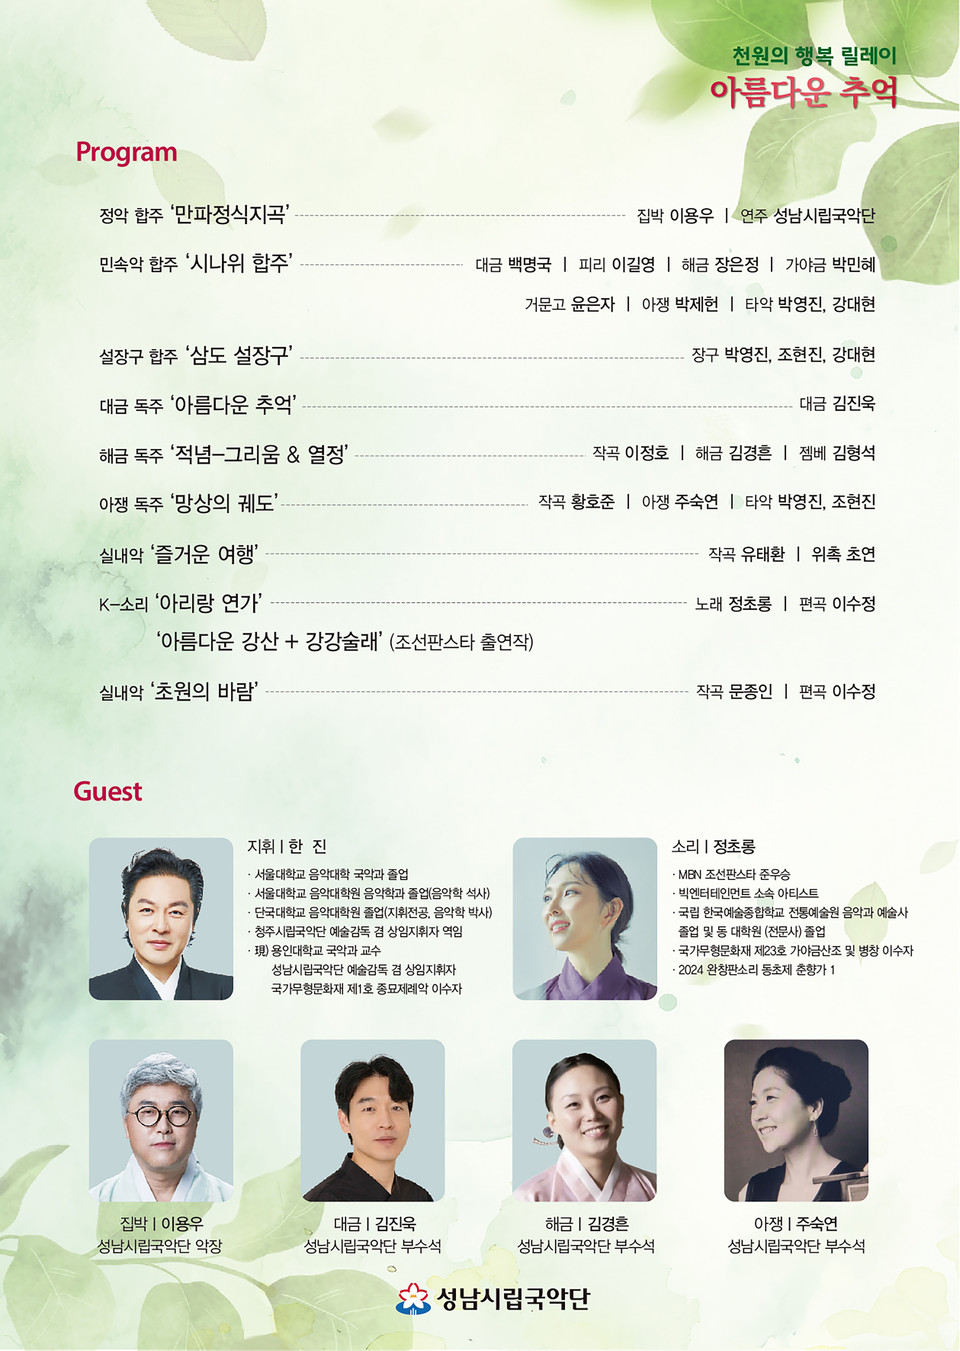 ▲ 성남시립국악단, ‘아름다운 추억’ 연주회 4월 25일 개최